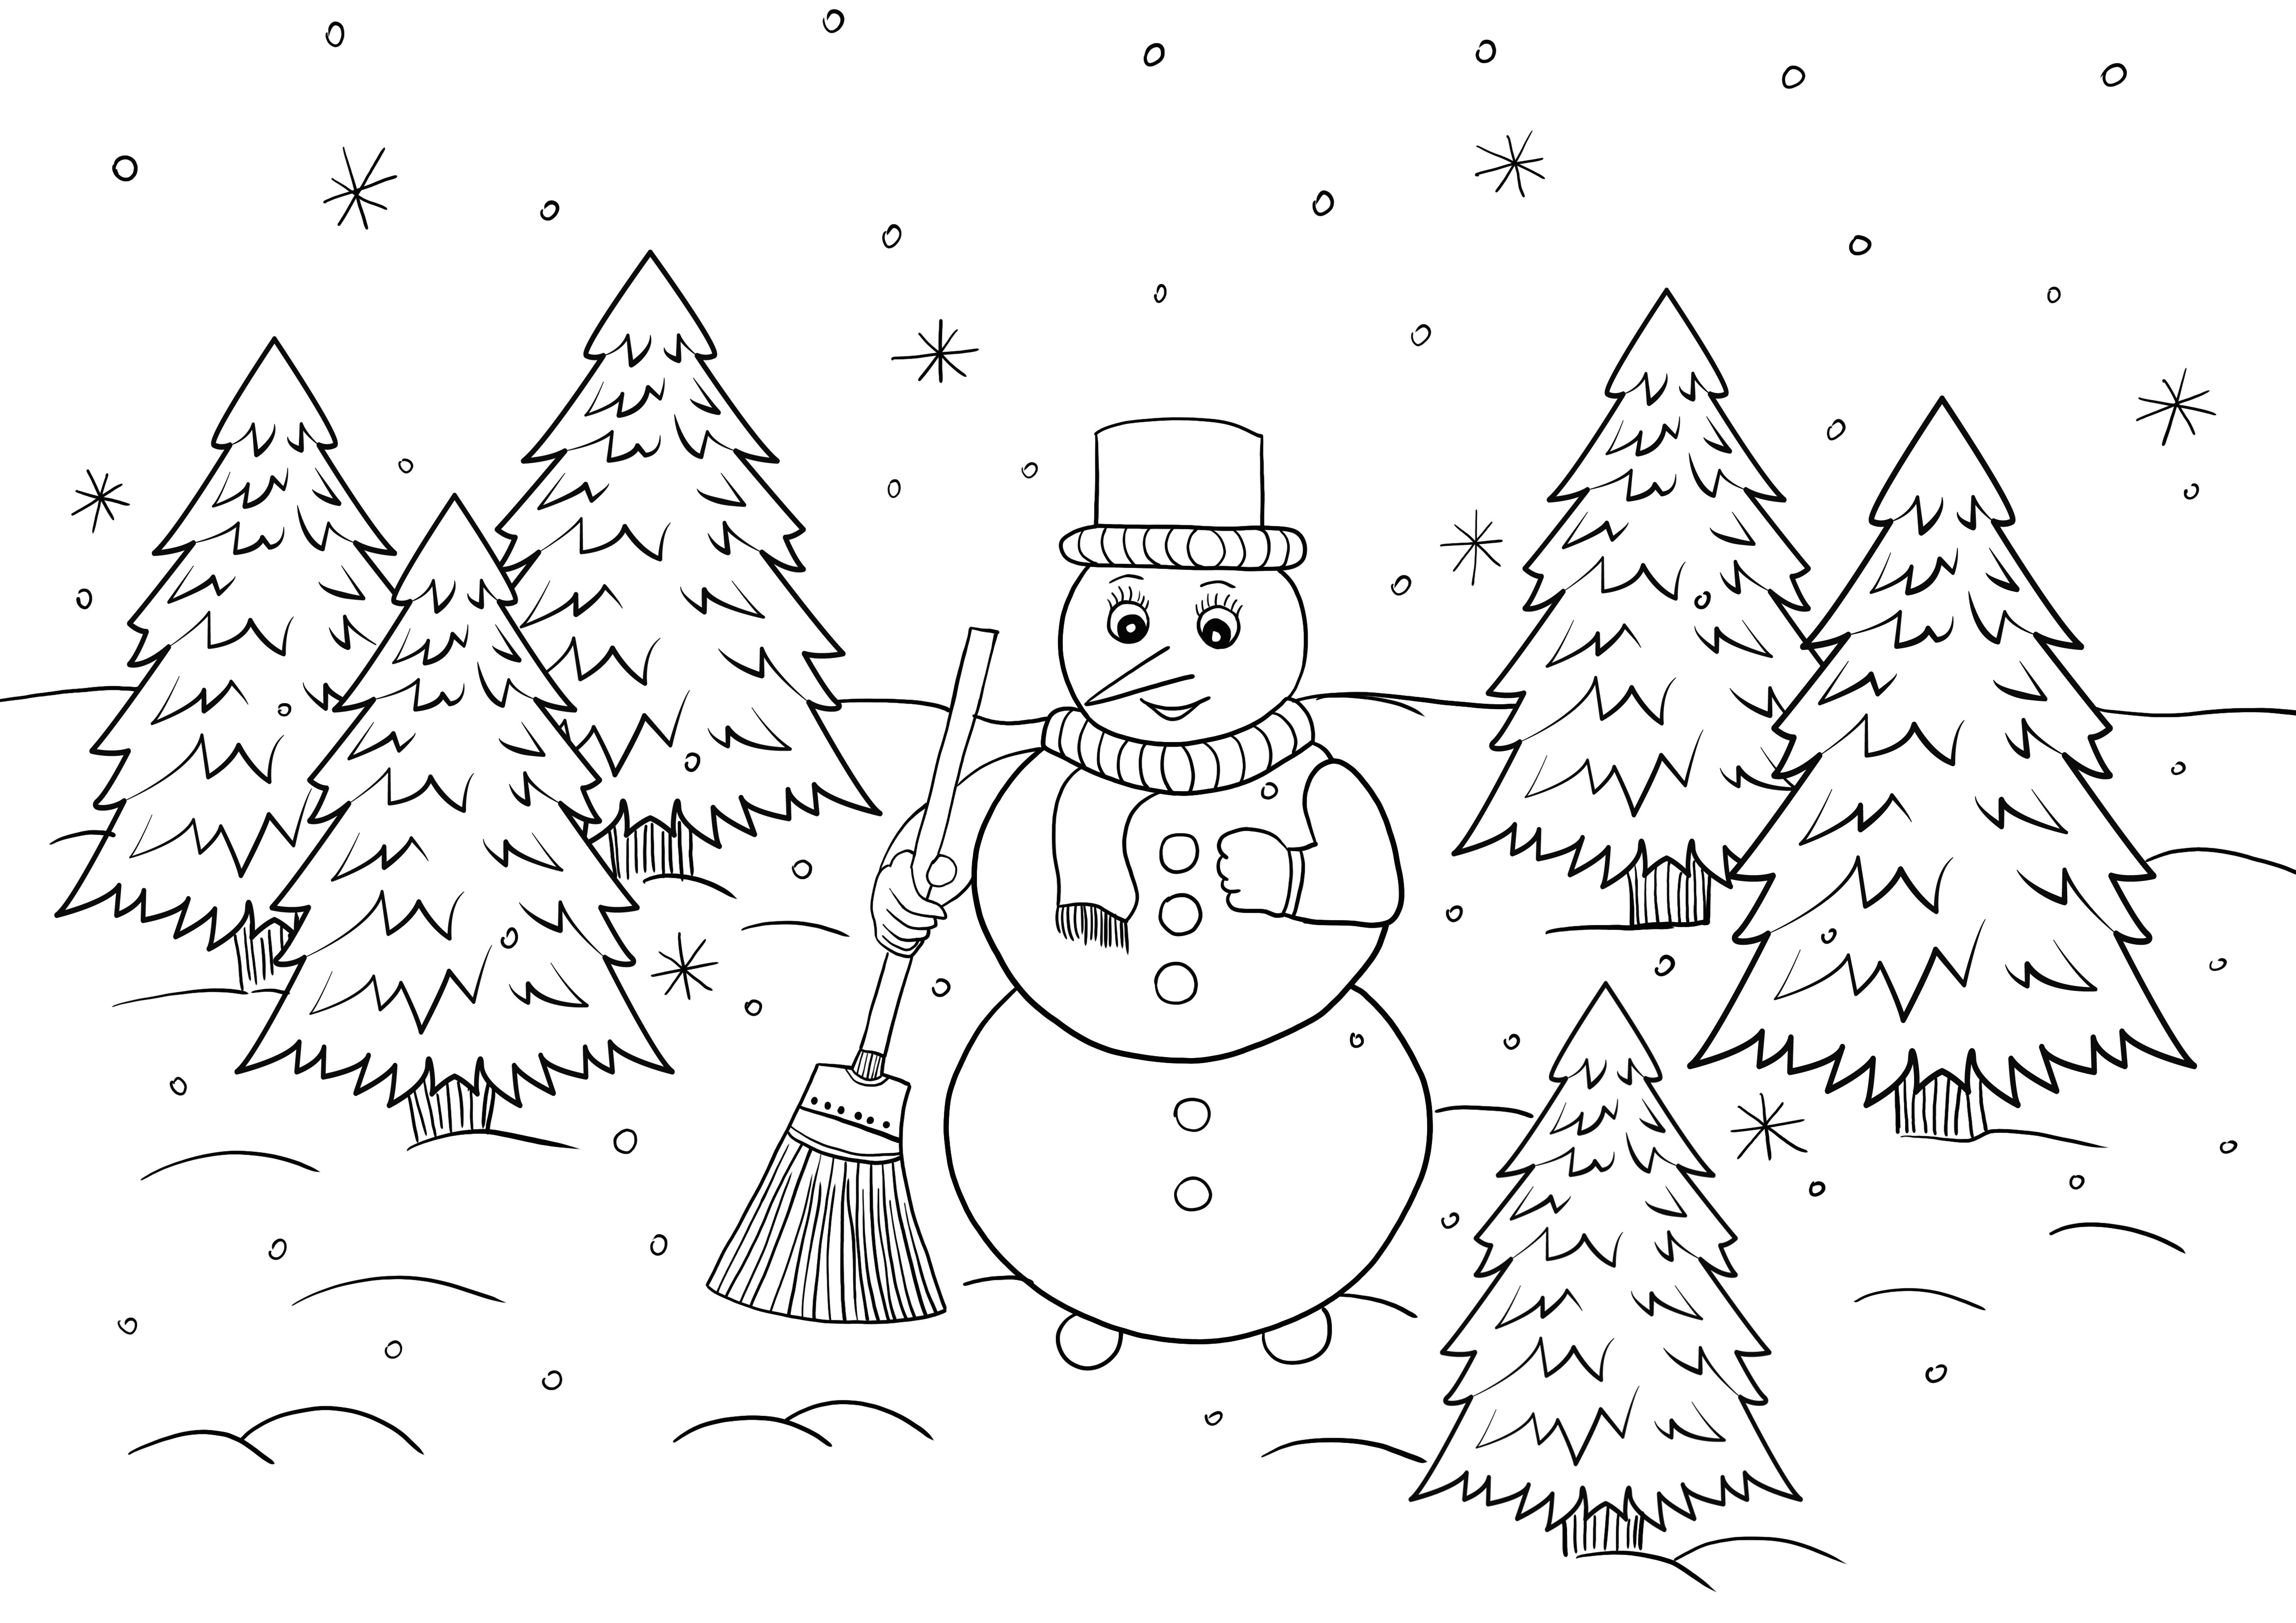 stampa gratuita di un fantastico inverno nella foresta-pupazzo di neve da colorare